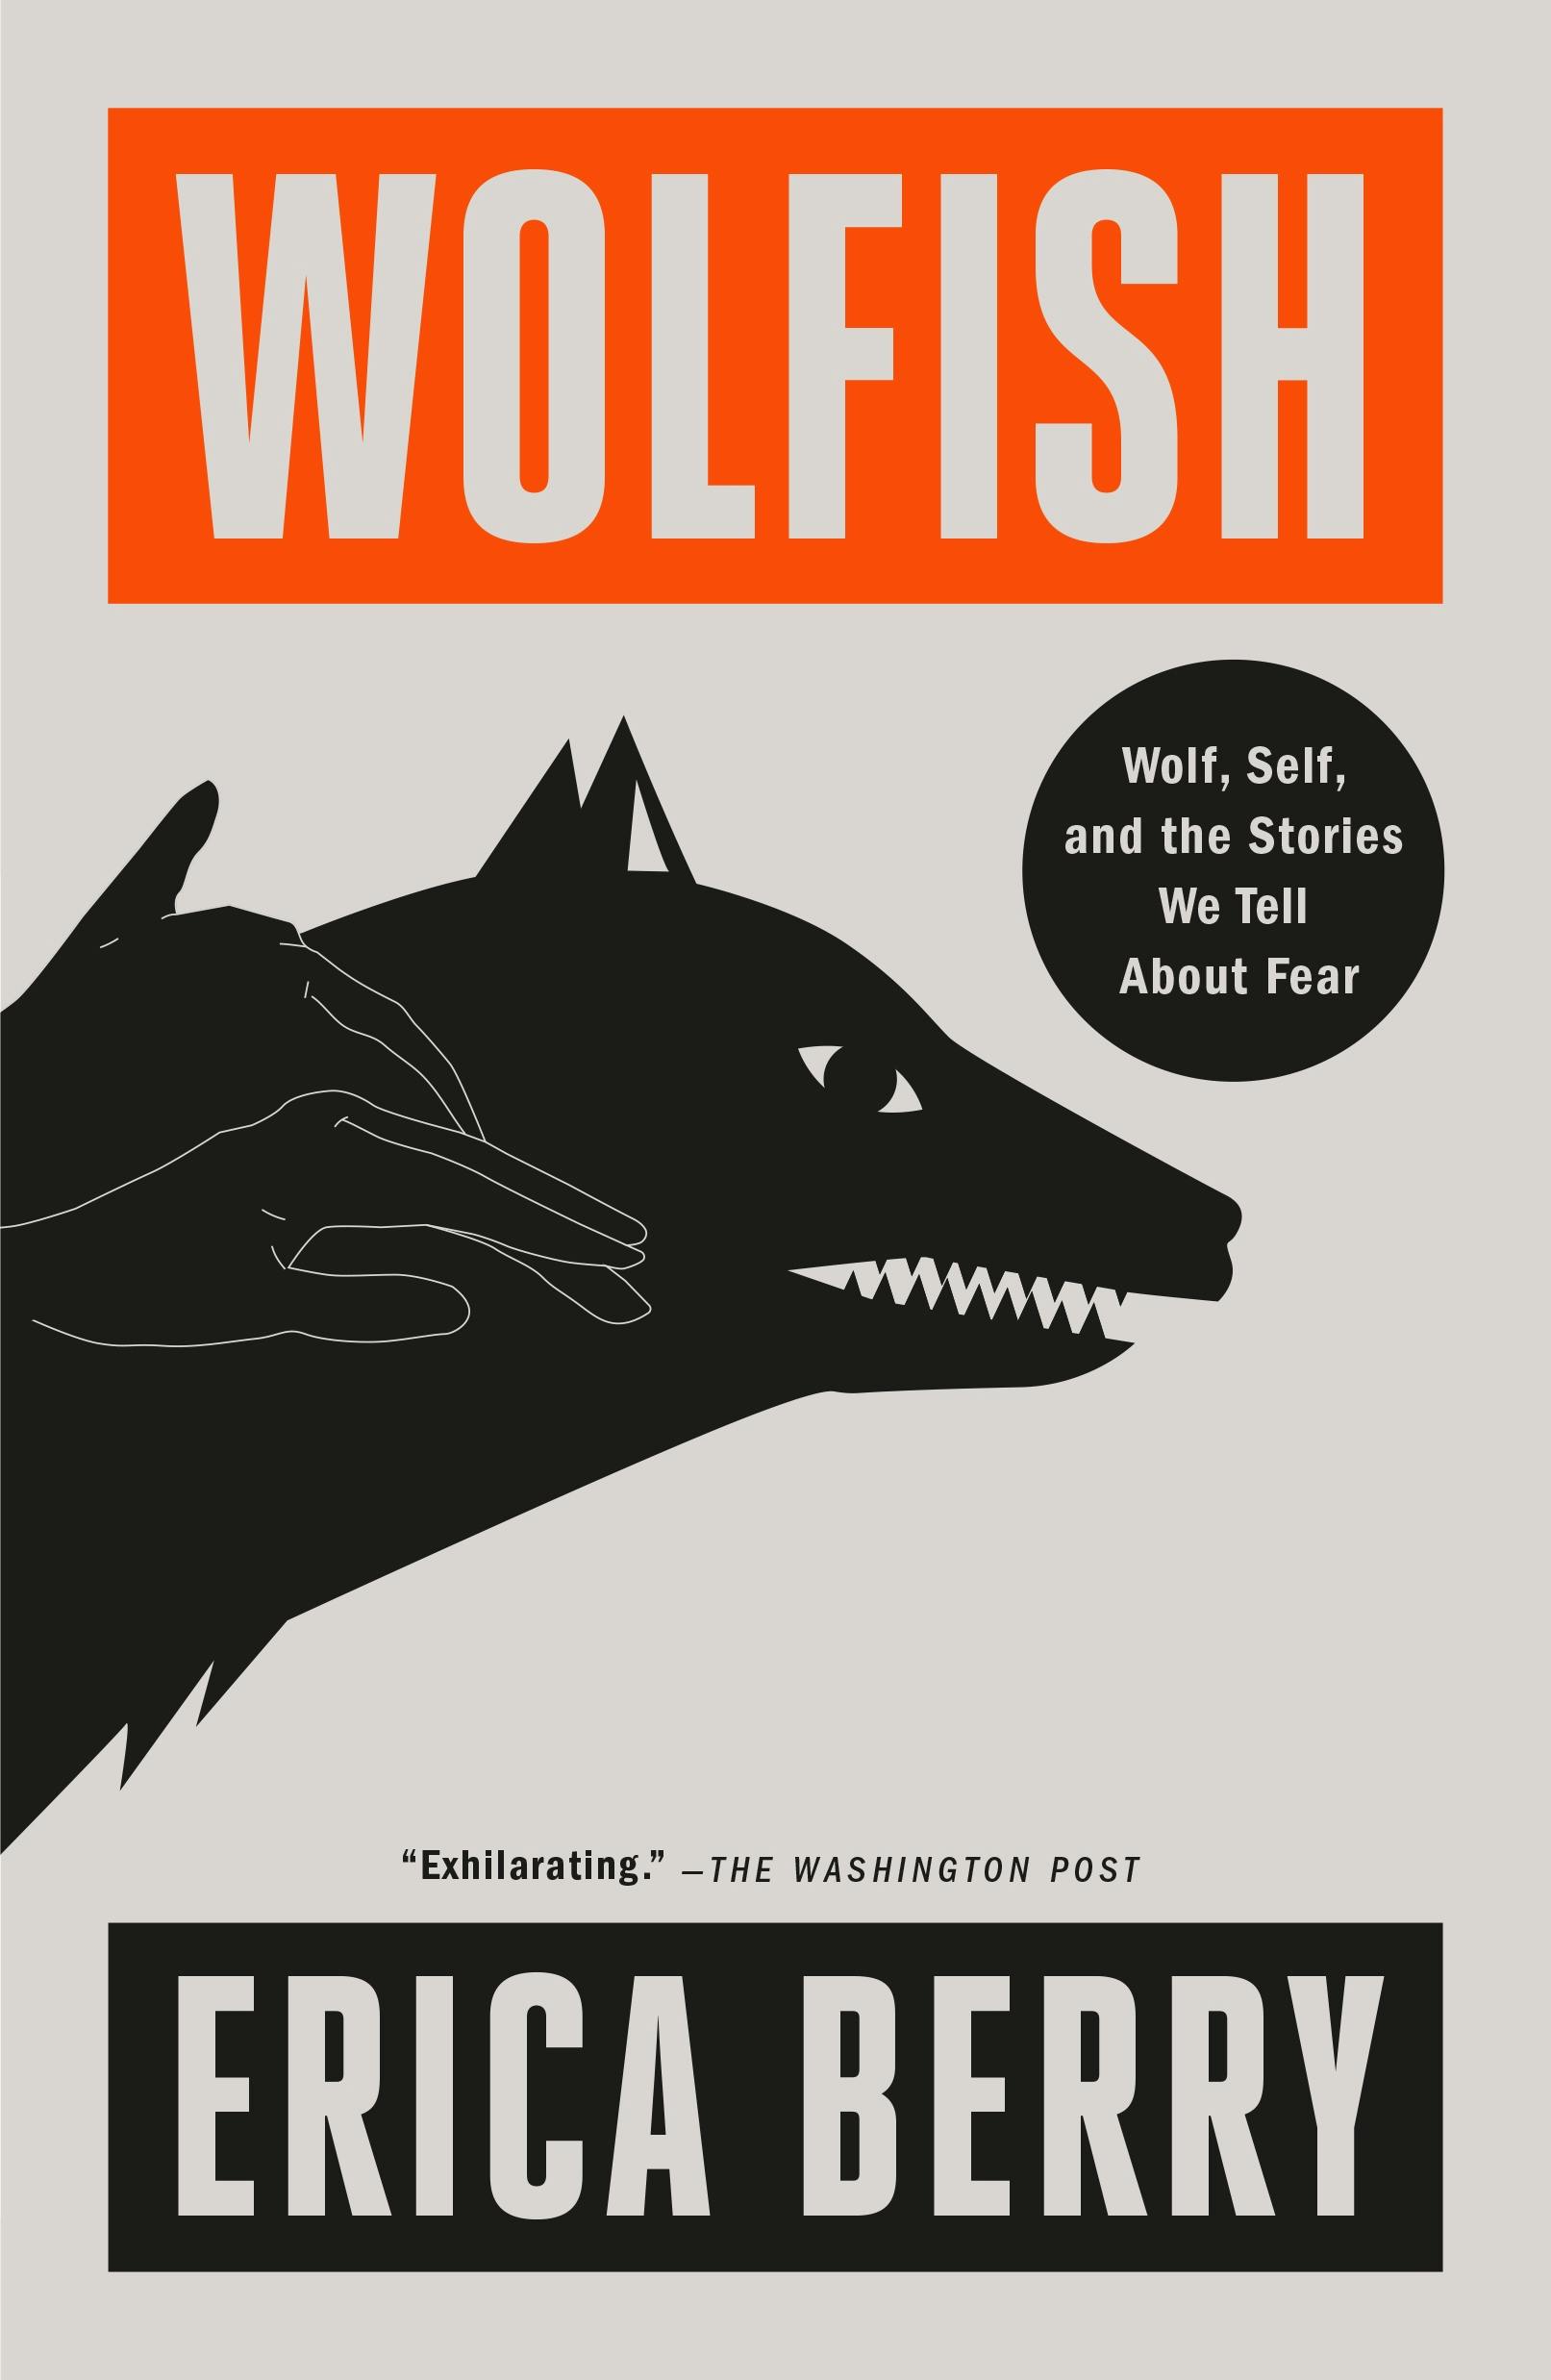 Wolfish image